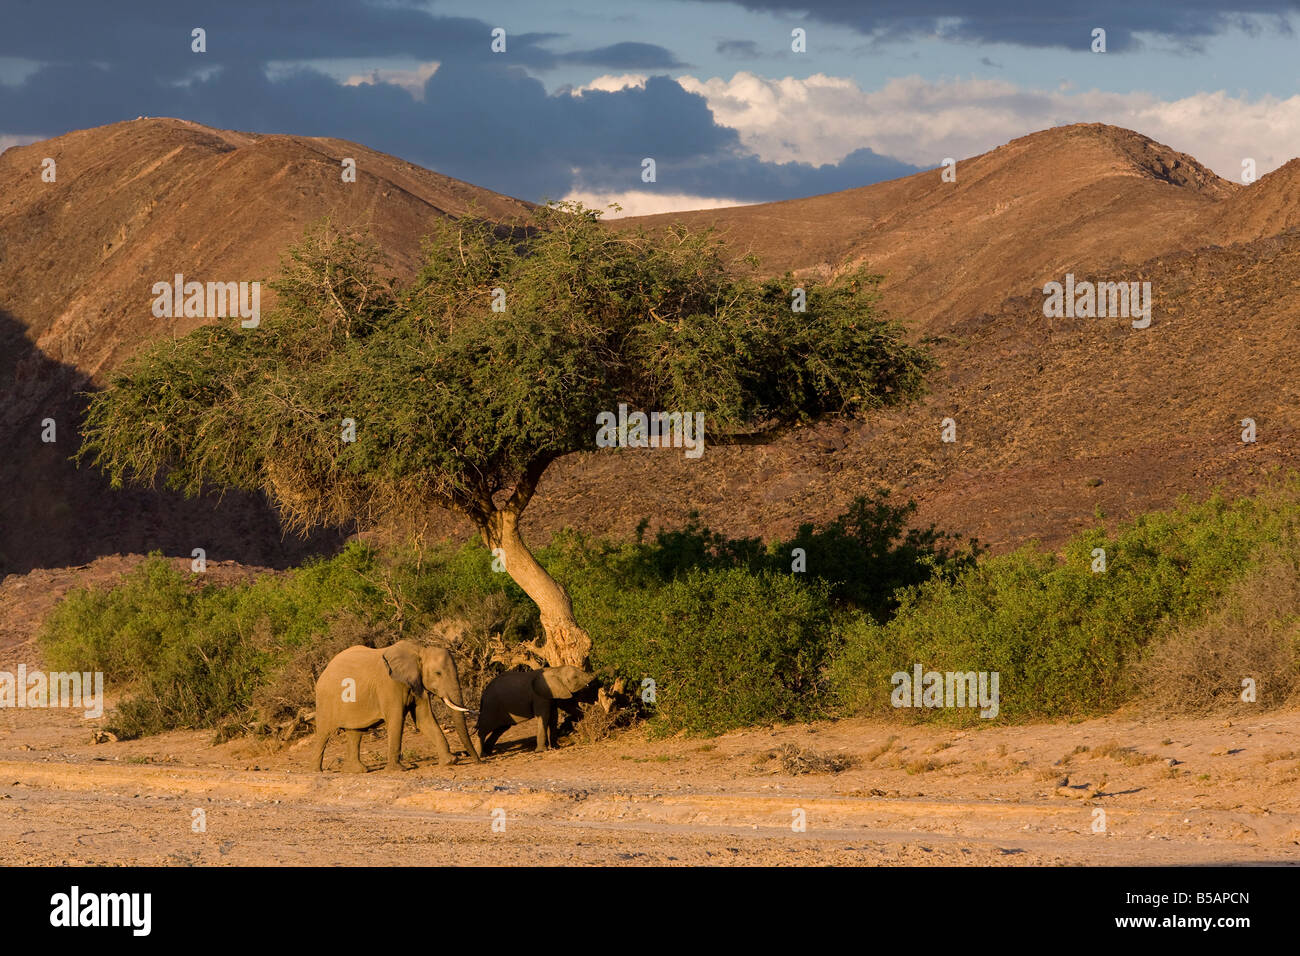 Deserto-abitazione elefante africano (Loxodonta africana africana) nel letto asciutto del fiume, Namibia, Africa Foto Stock